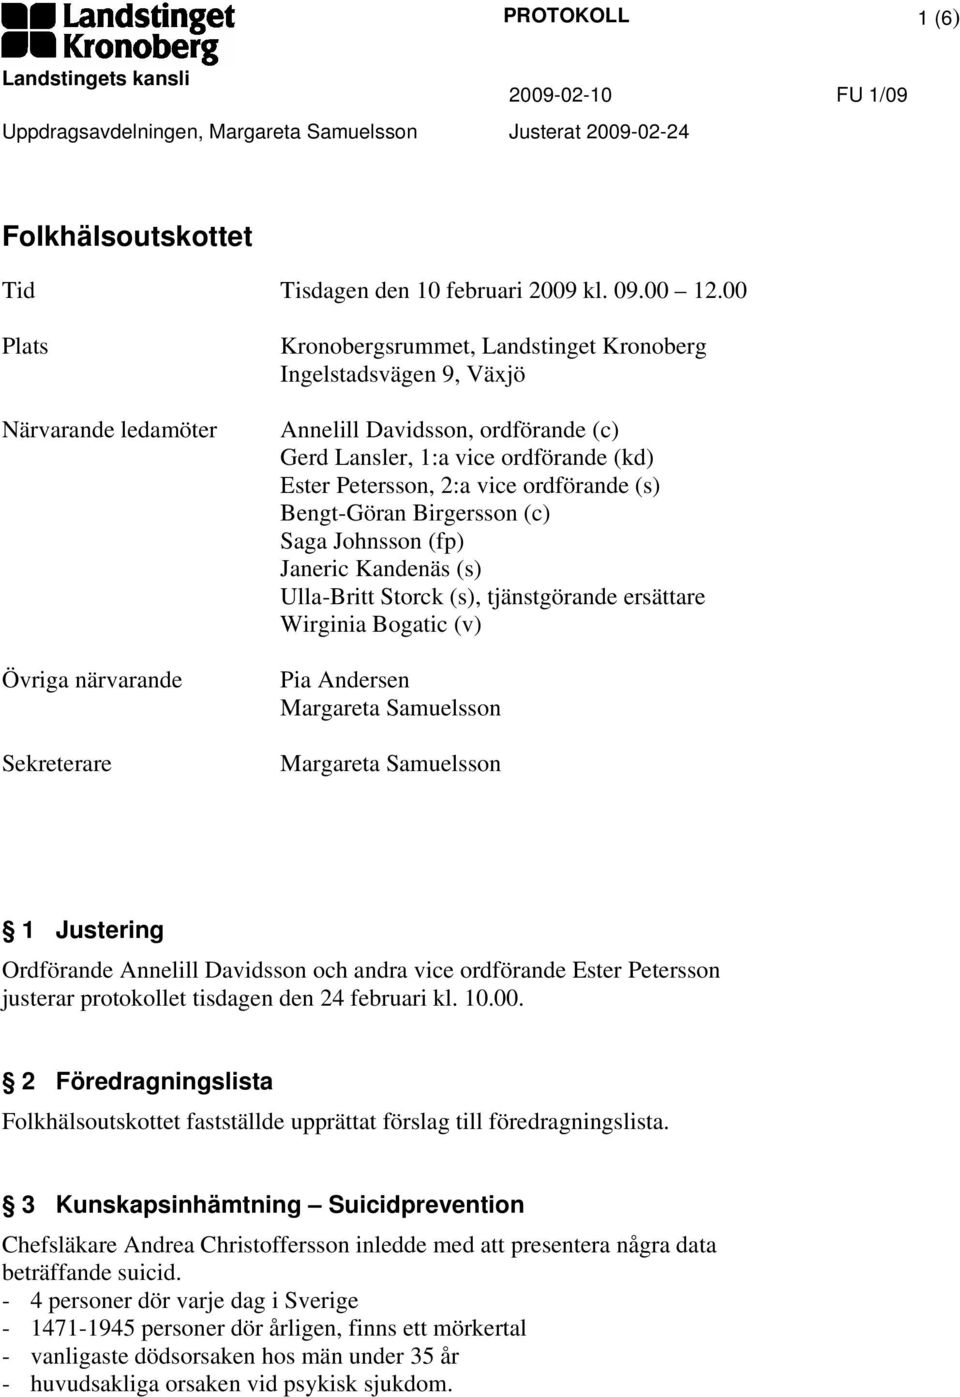 Ester Petersson, 2:a vice ordförande (s) Bengt-Göran Birgersson (c) Saga Johnsson (fp) Janeric Kandenäs (s) Ulla-Britt Storck (s), tjänstgörande ersättare Wirginia Bogatic (v) Pia Andersen 1